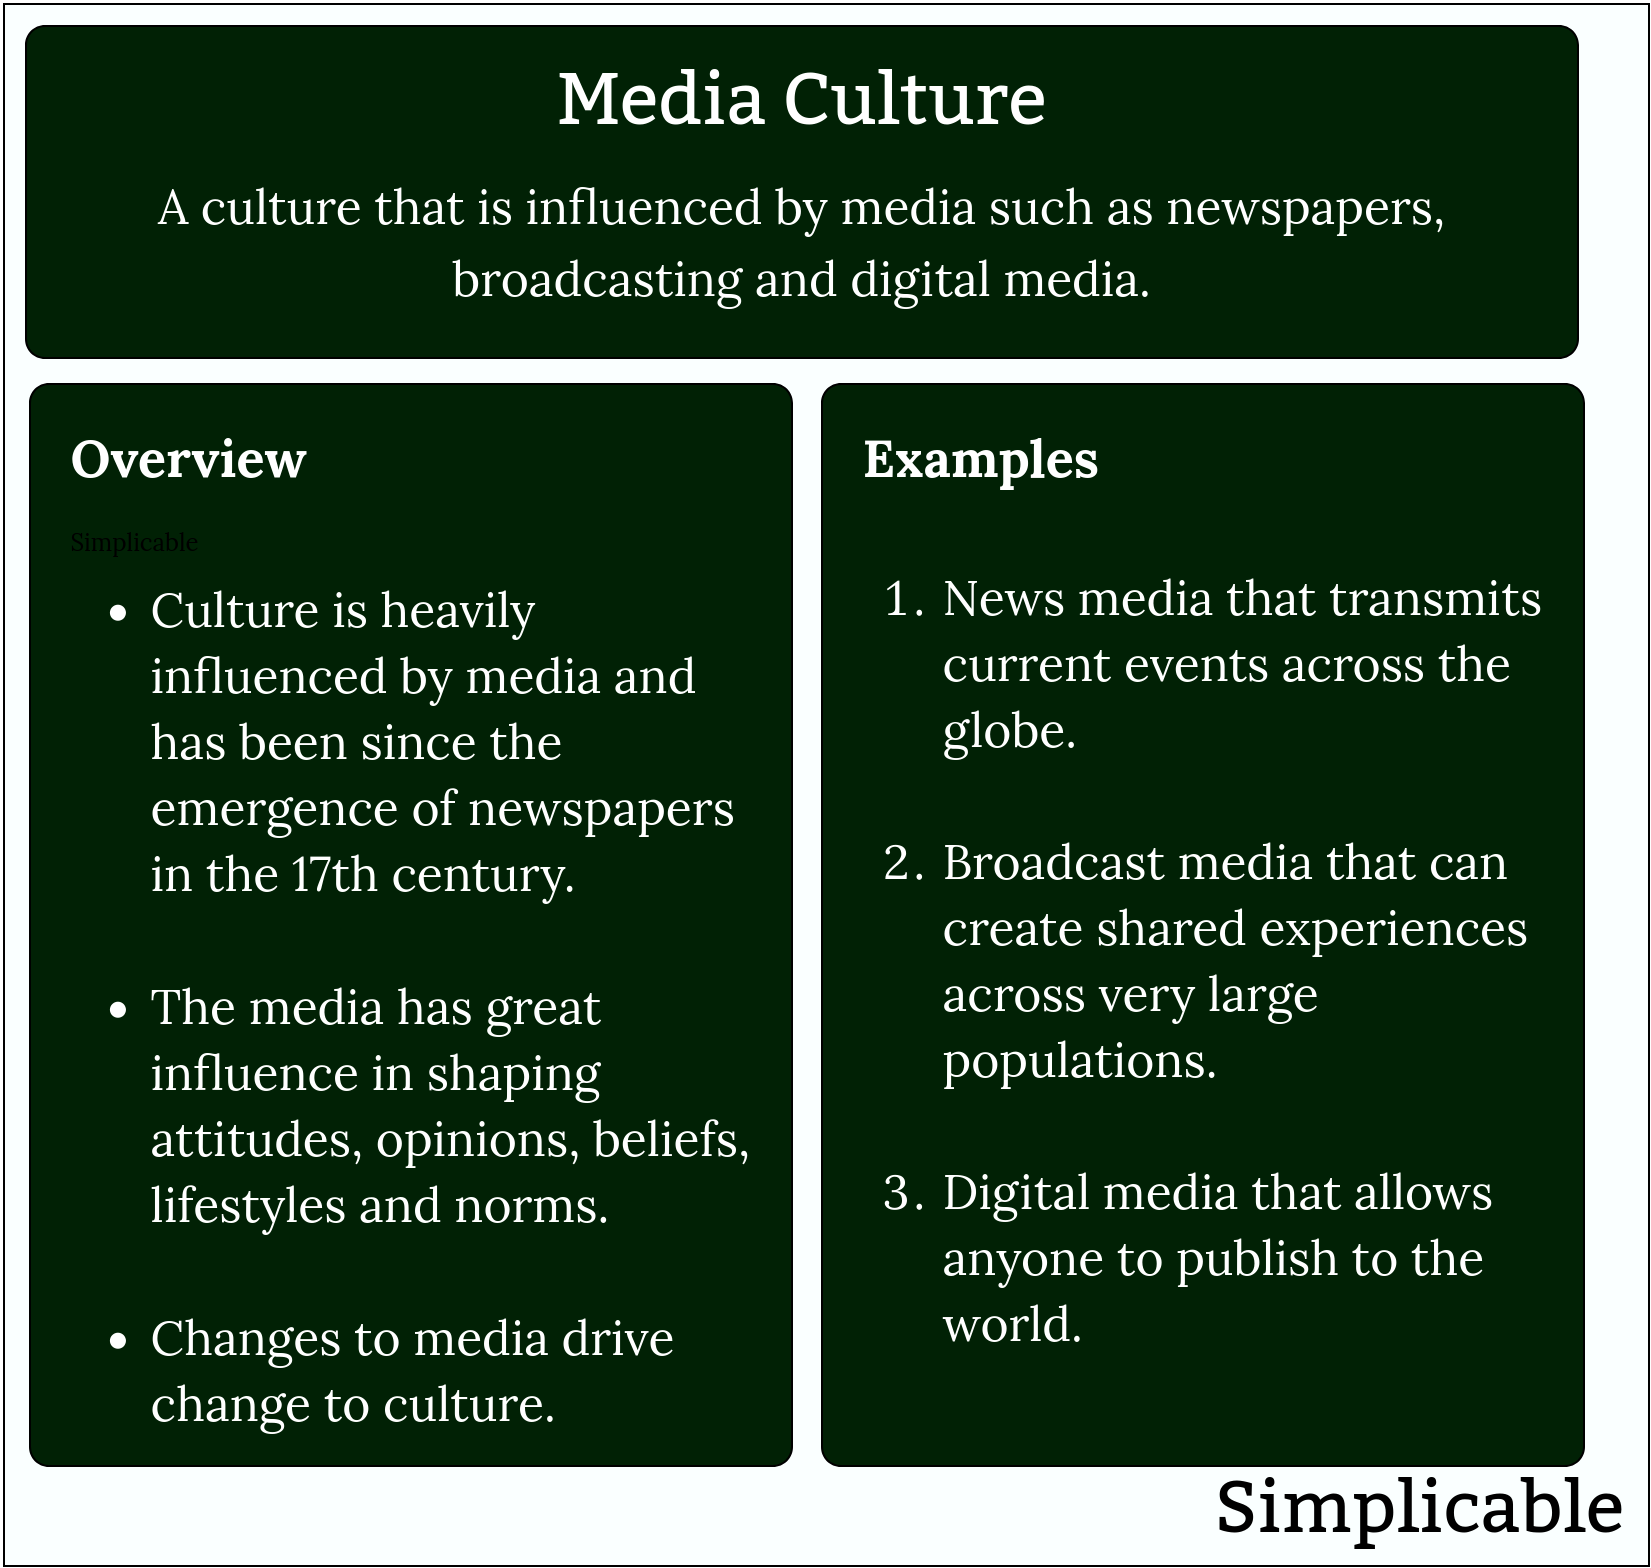 media culture summary